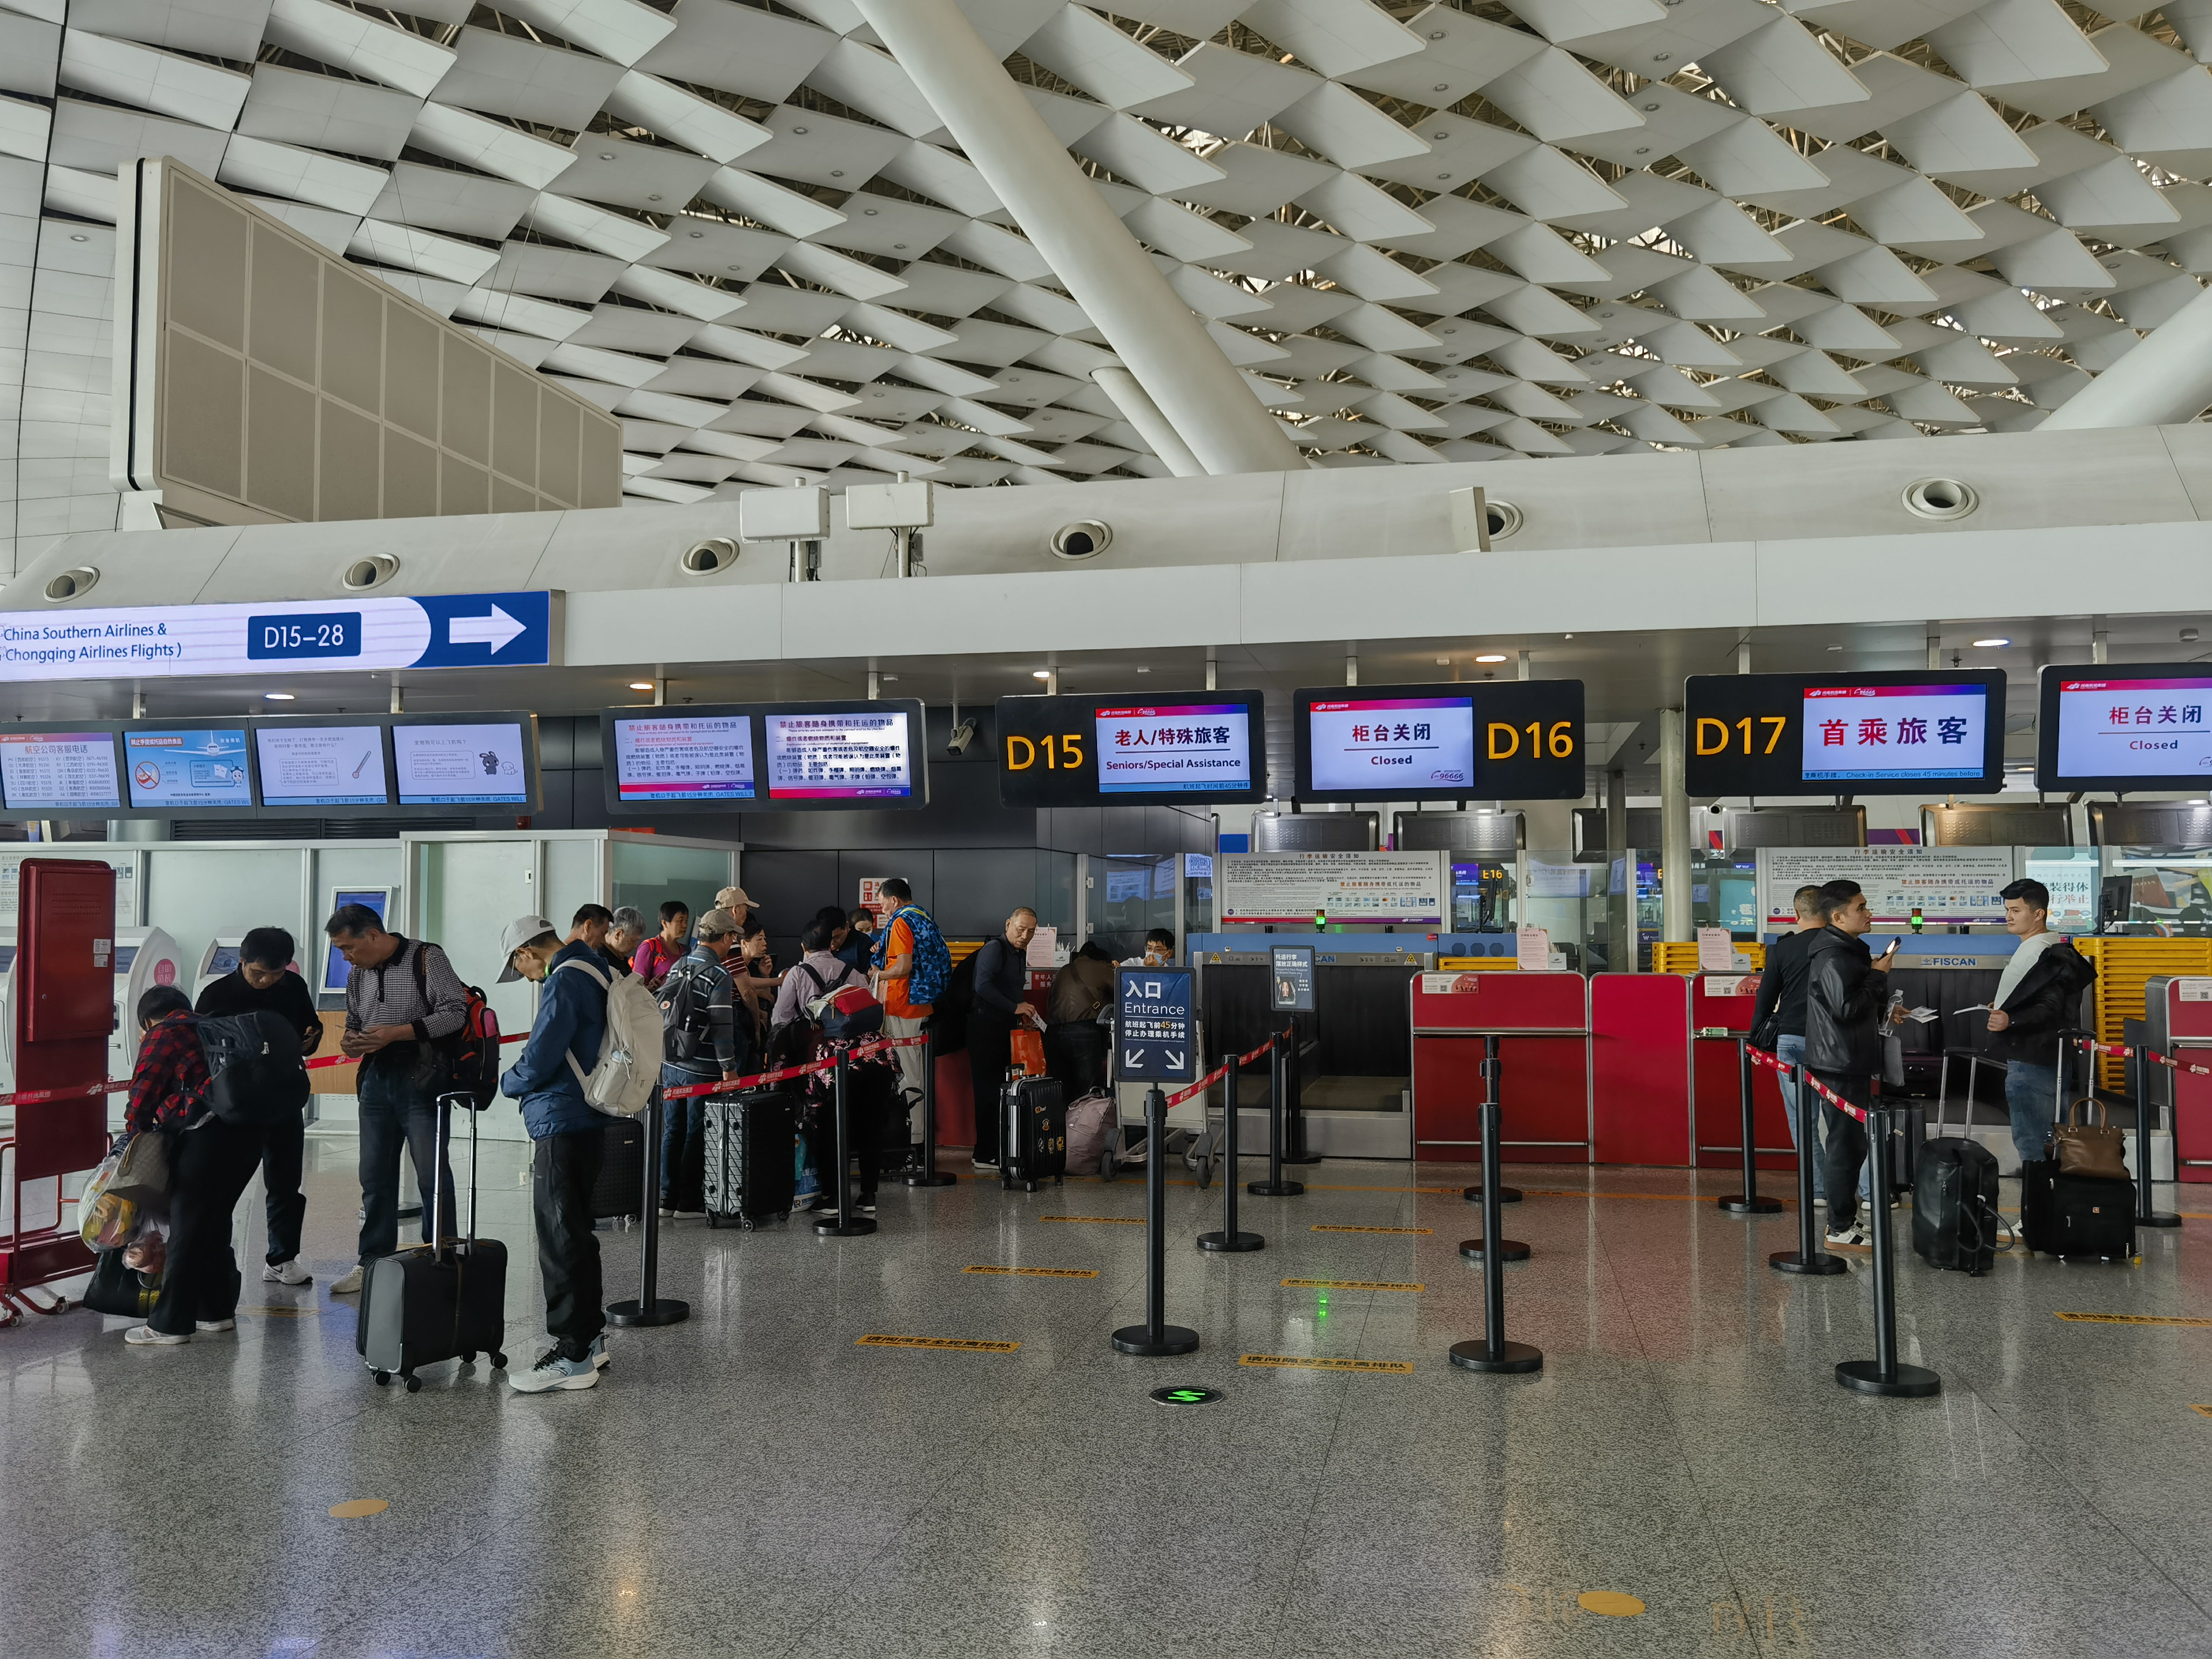 郑州机场值机柜台分布图片